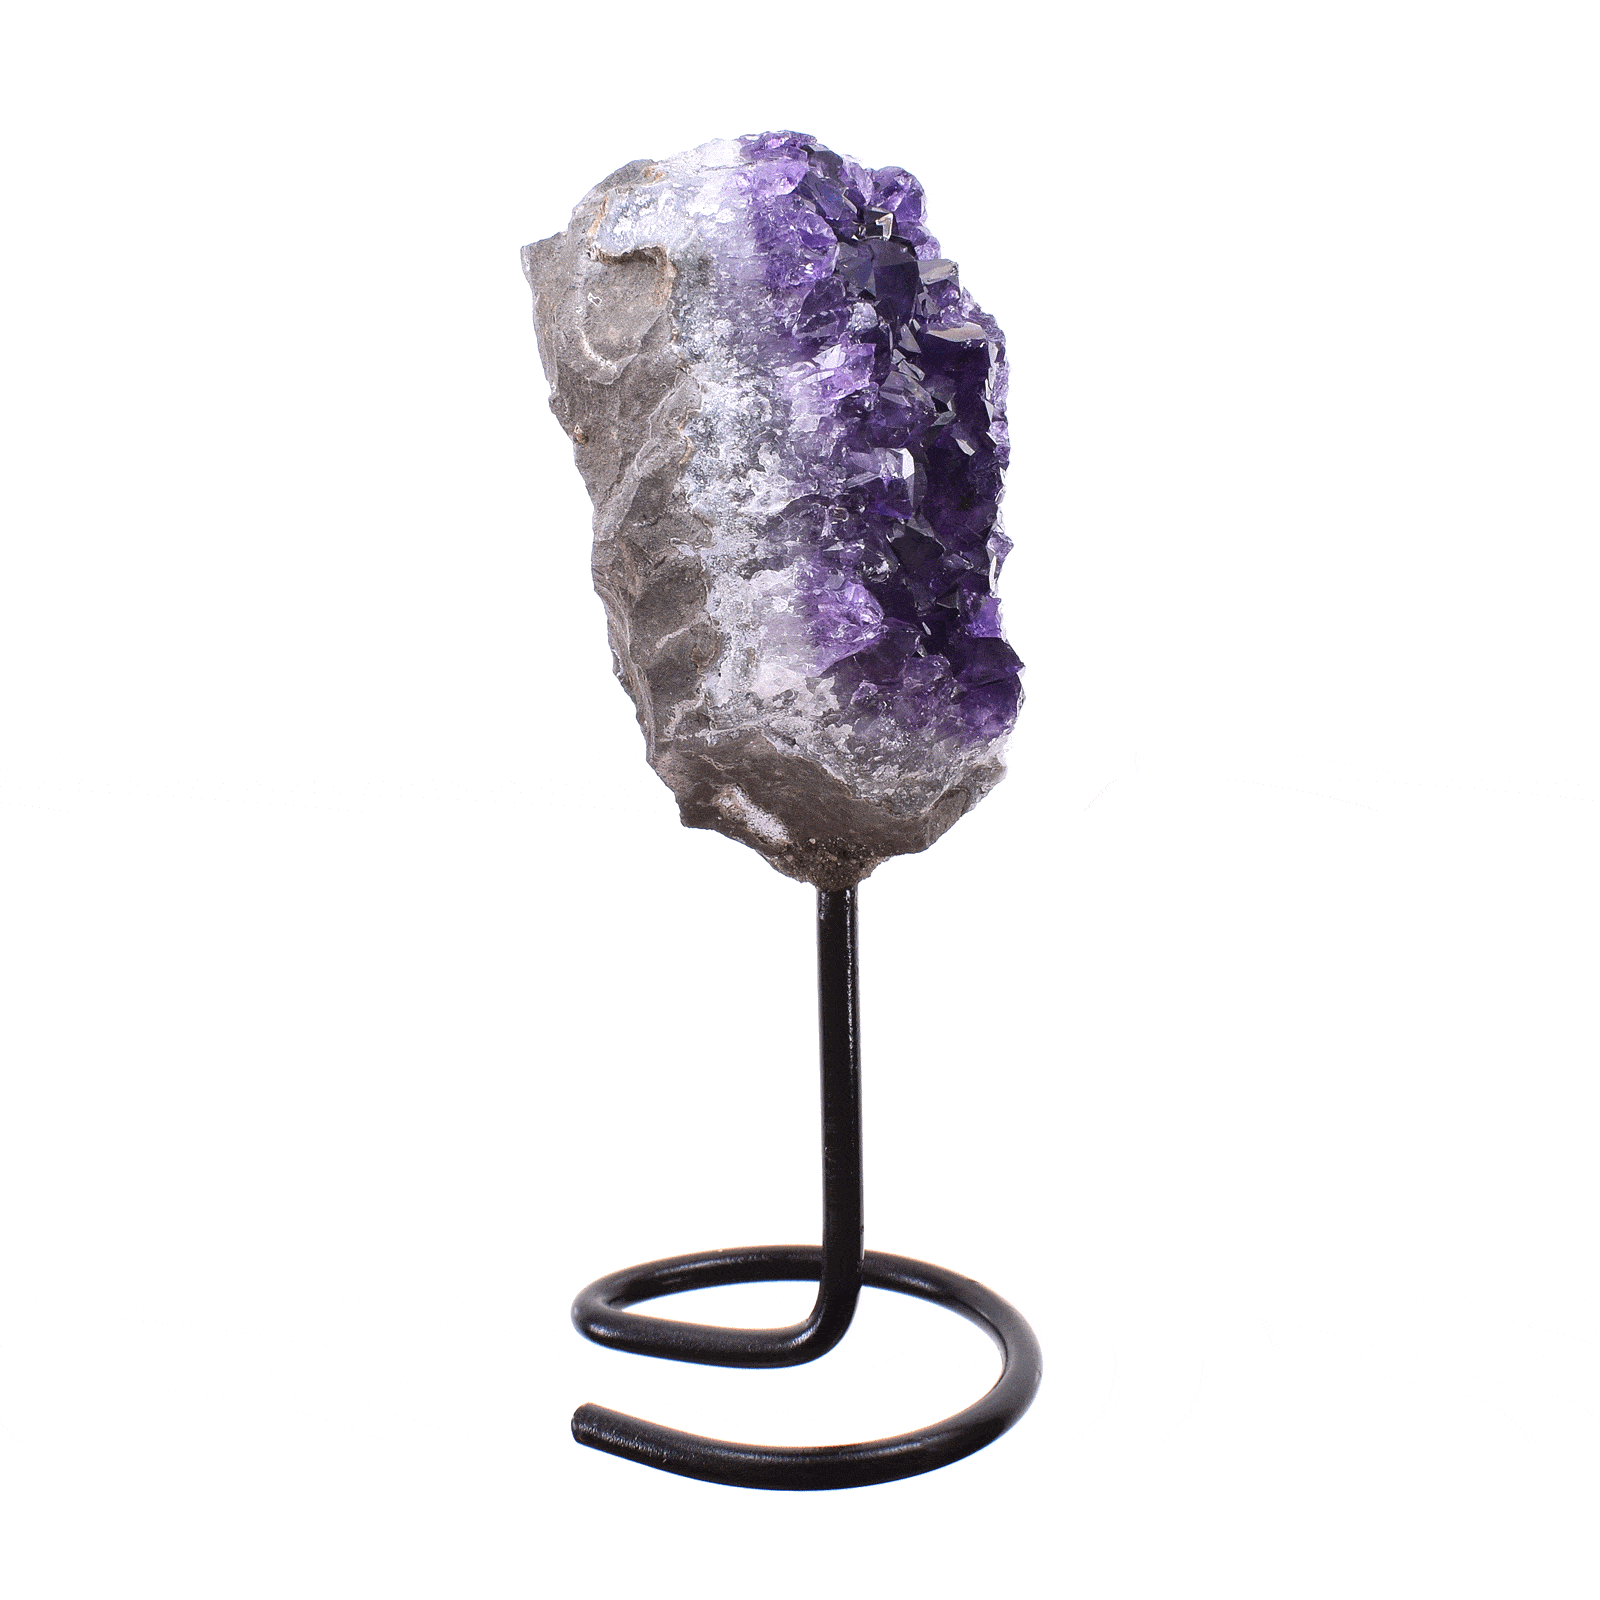 Ακατέργαστο κομμάτι φυσικής πέτρας Αμεθύστου, ενσωματωμένο σε μαύρη μεταλλική βάση. Το προϊόν έχει ύψος 16cm. Αγοράστε online shop.